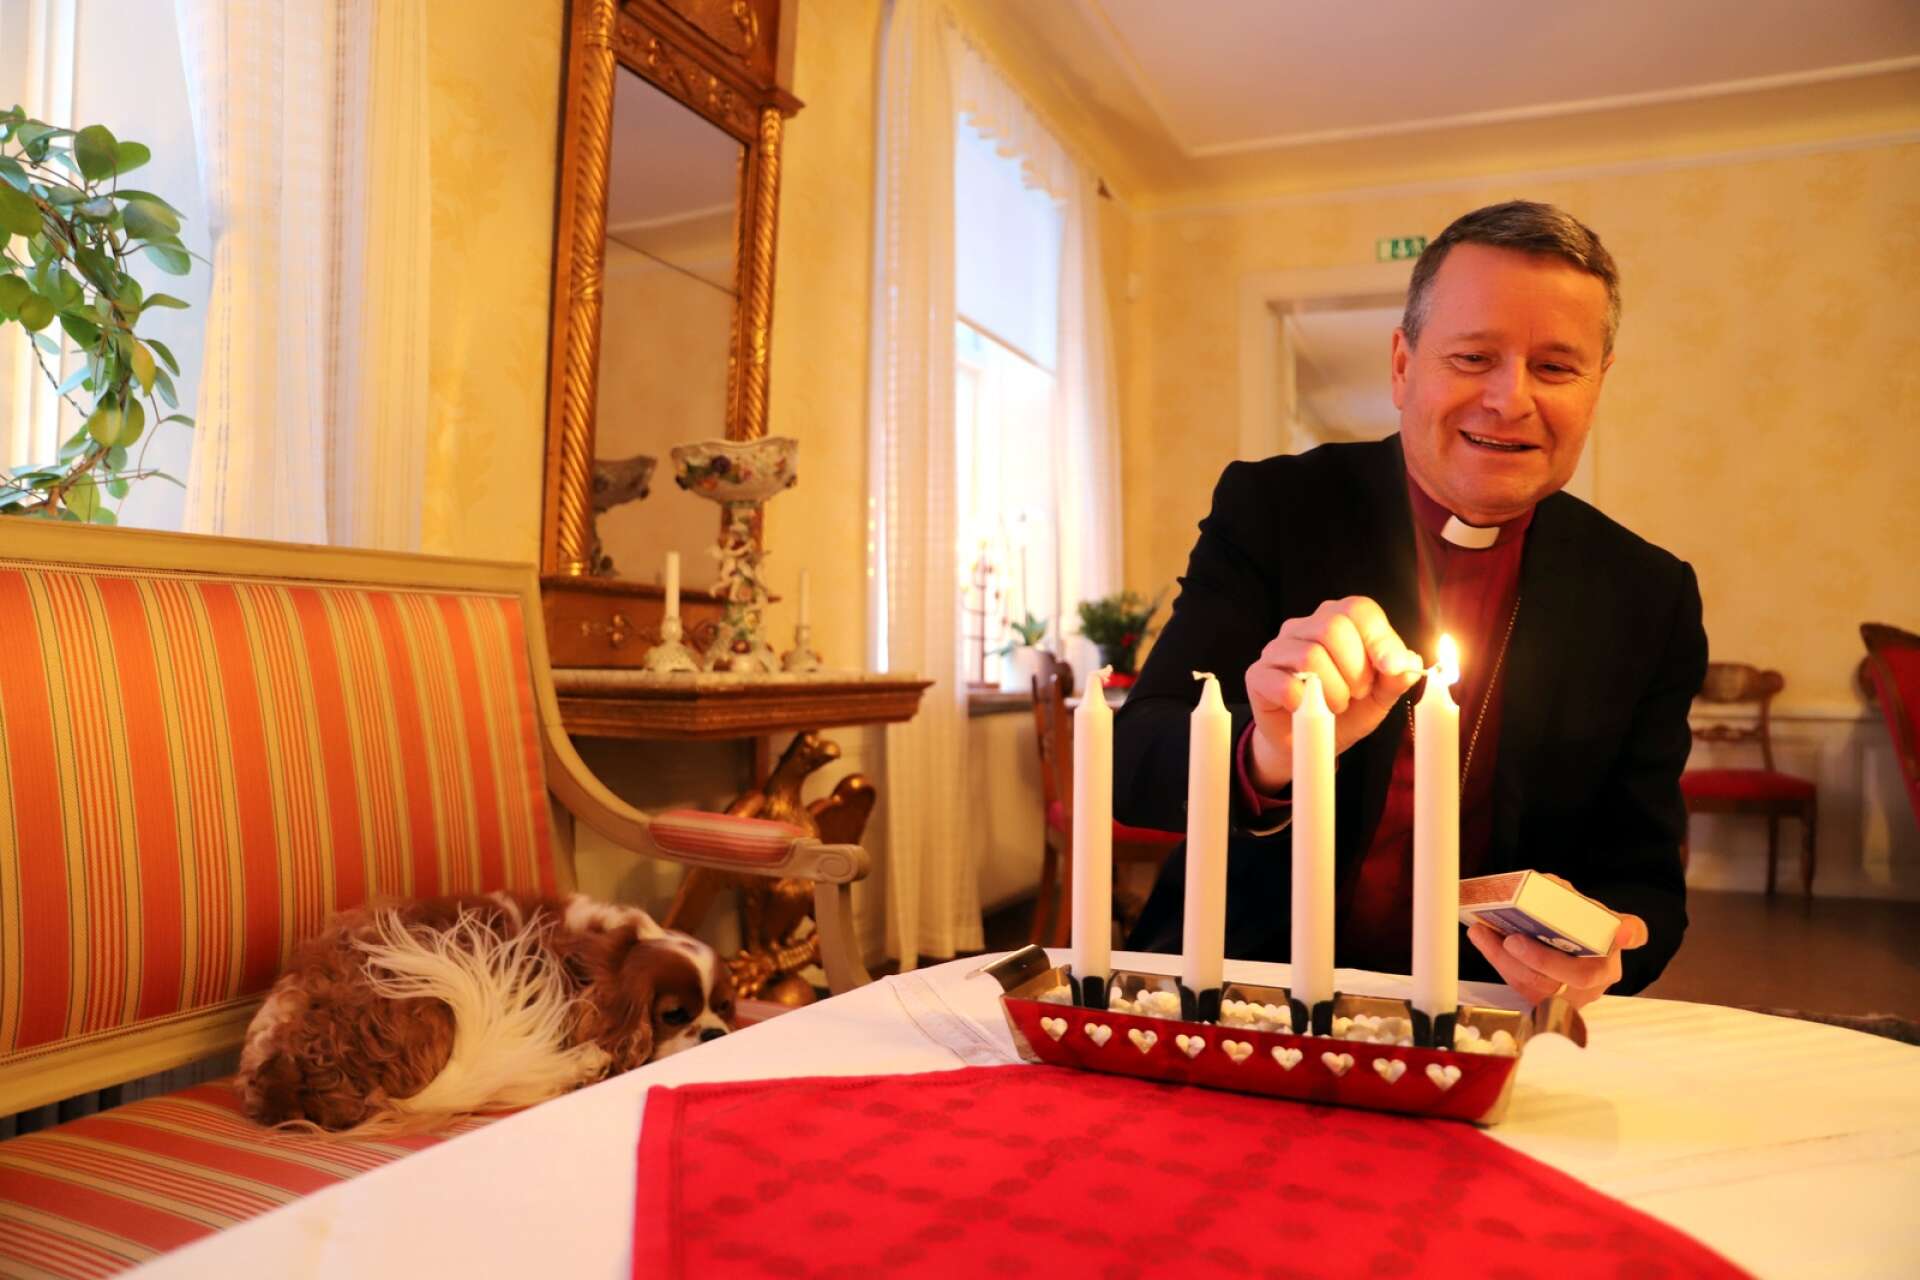 Biskop Sören Dalevi är aktuell med en ny bok med samlade krönikor på temat jul. Hunden Svante vilar lugnt medan husse tänder första adventsljuset.